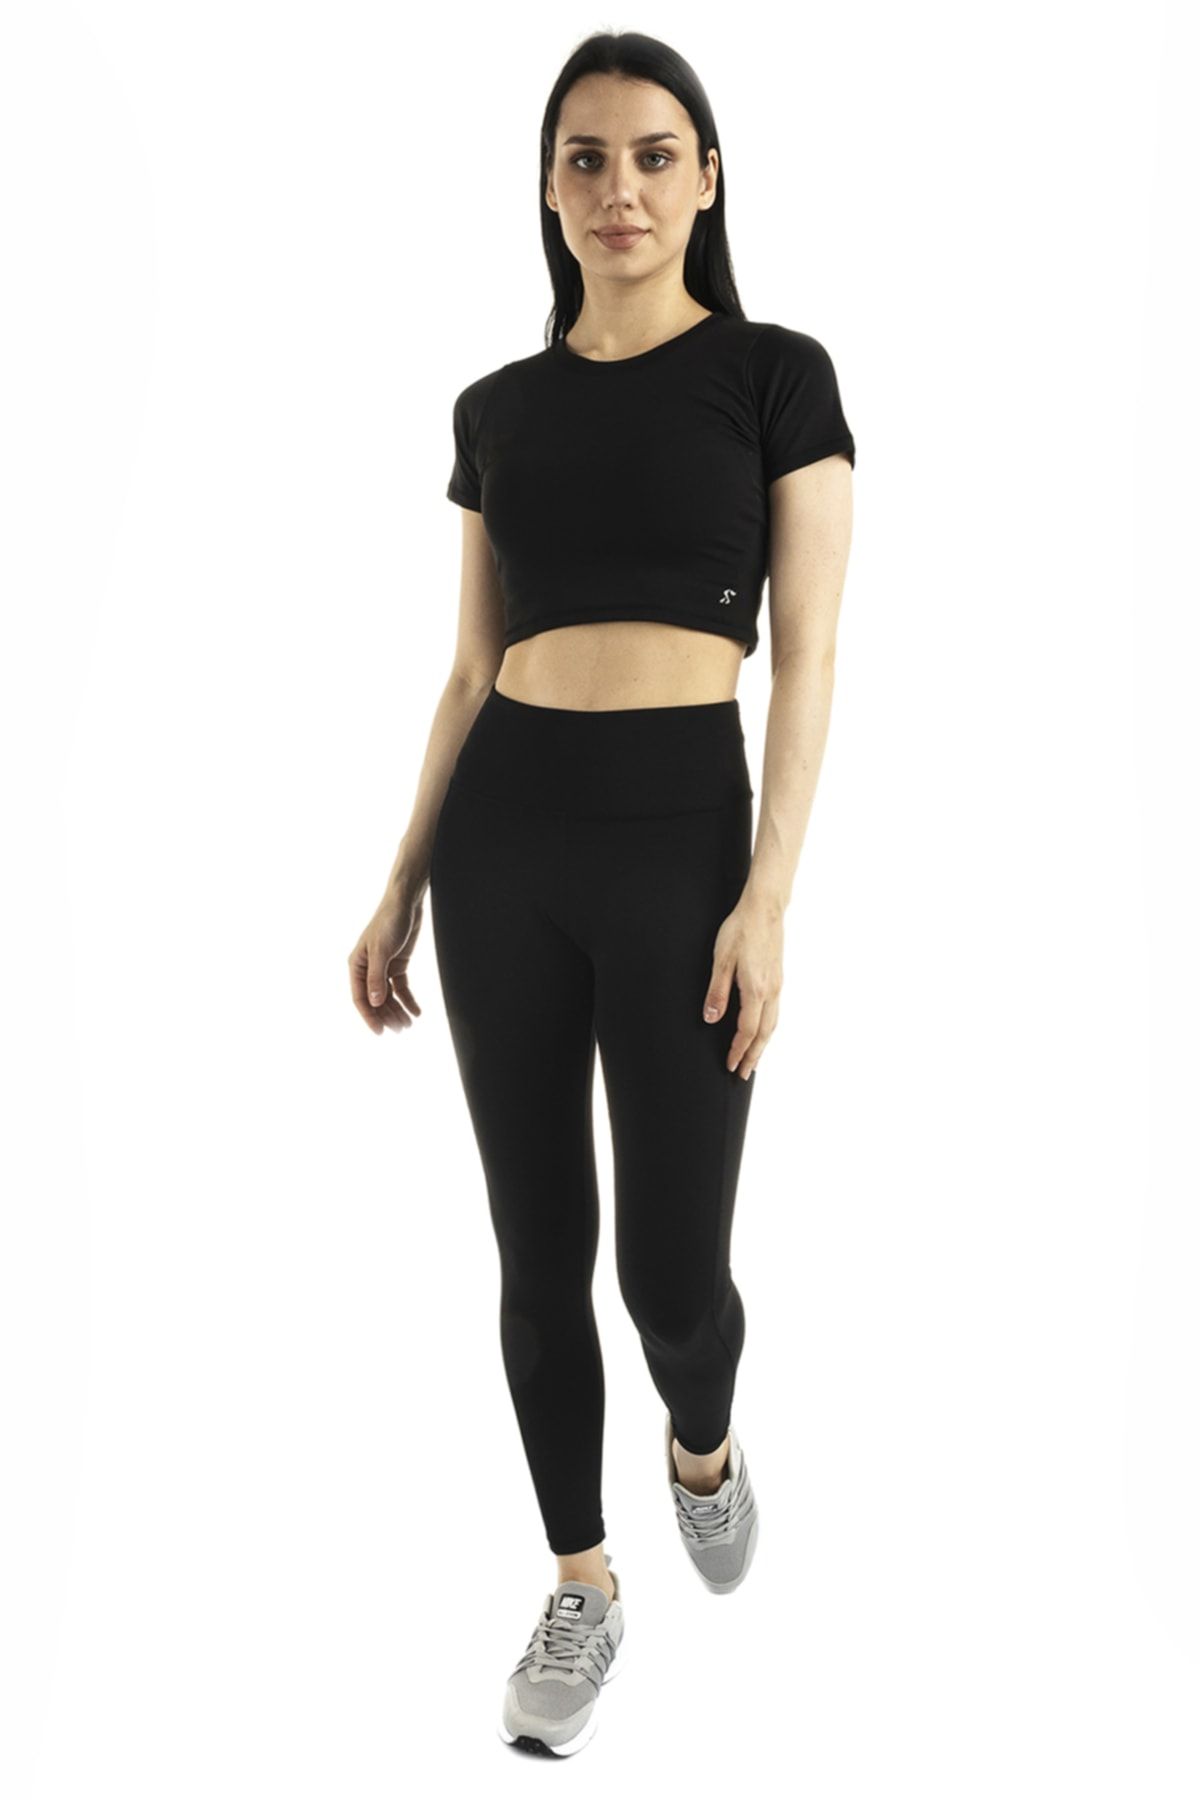 The Step Sports Kadın Siyah Spocket Cepli Yüksek Bel Toparlayıcı, Sıkılaştırıcı Yoga Tayt 25"